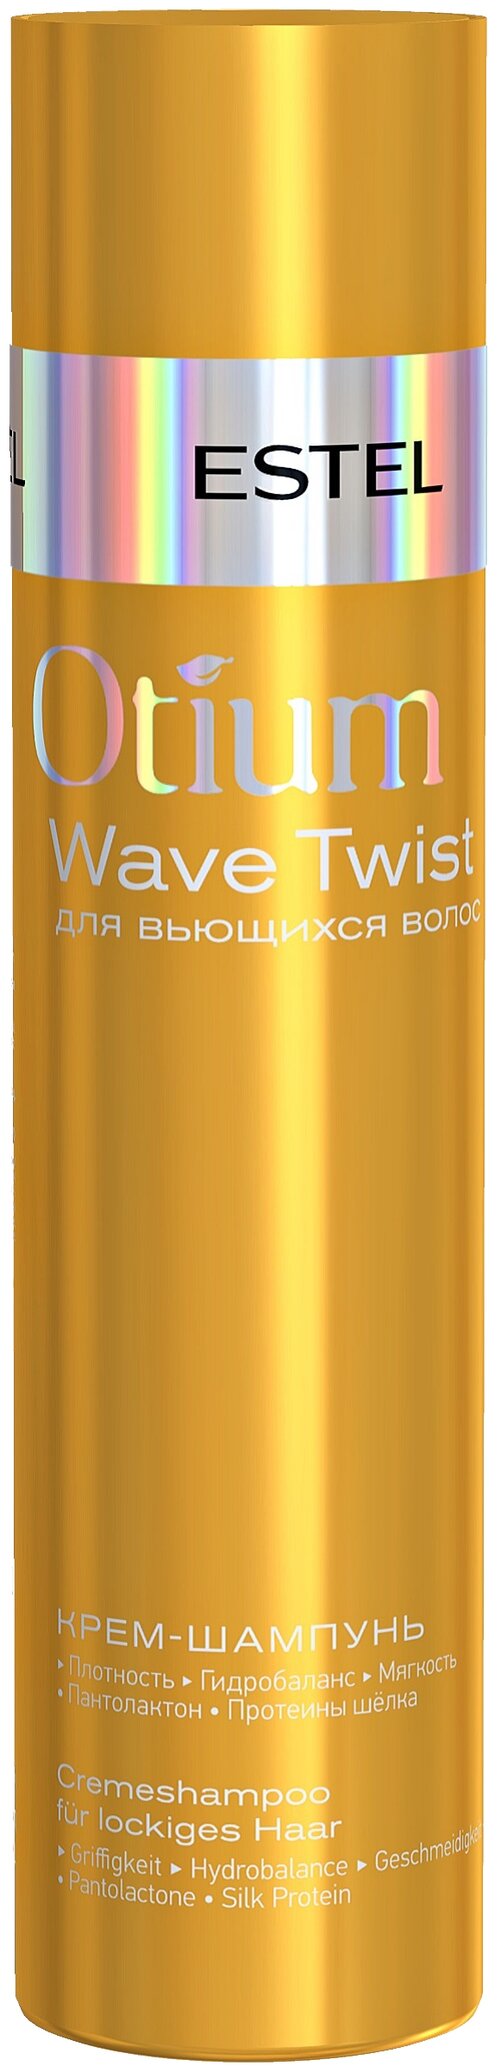 ESTEL крем-шампунь Otium Wave Twist, 250 мл